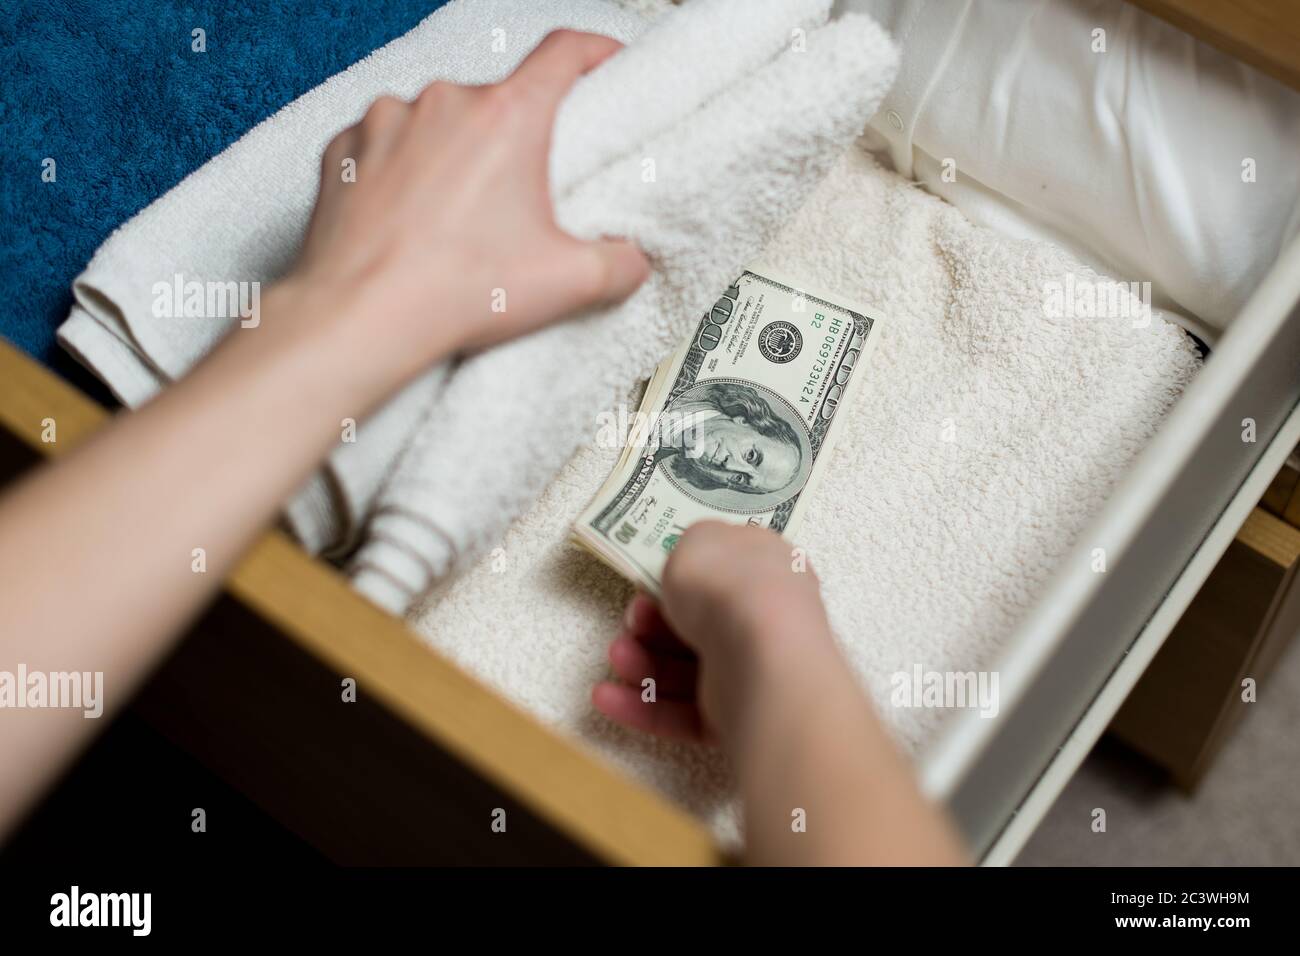 la main prend ou met une pile de billets de cent dollars dans une boîte de serviette. Accumulation Banque D'Images